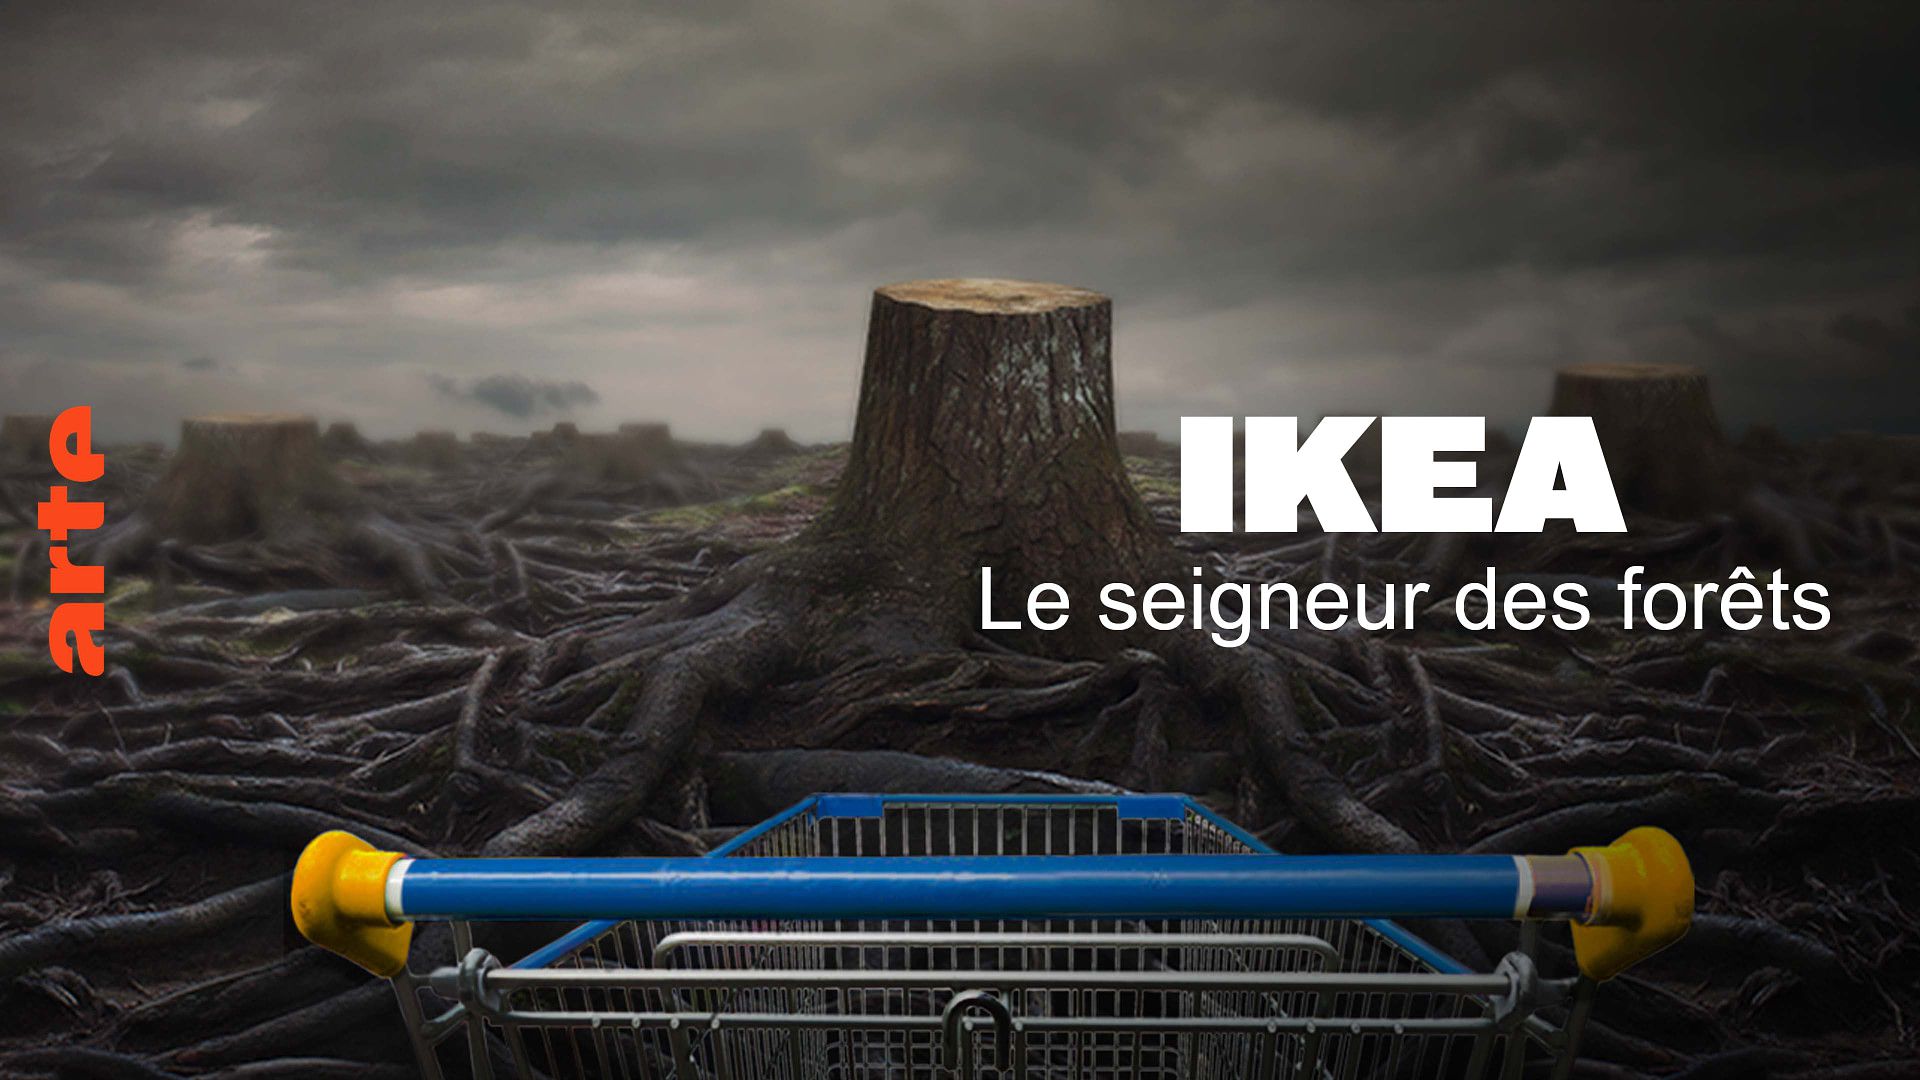 Ikea, le seigneur des forêts - Regarder le documentaire complet | ARTE